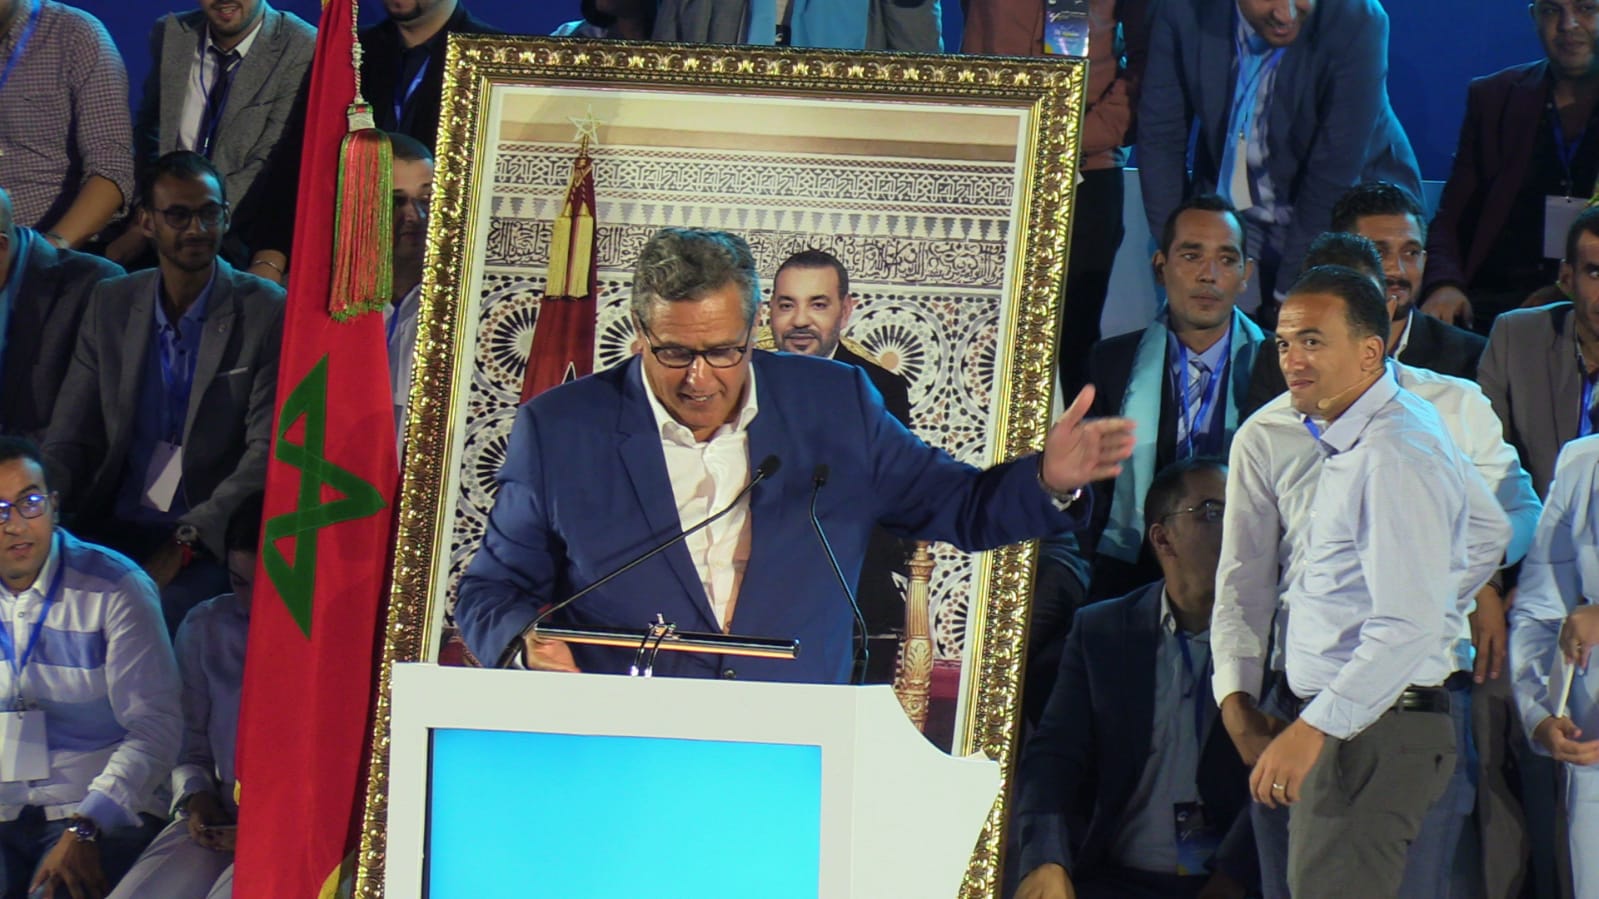 أخنوش: تعرضت لحملات كثيرة منذ 2016 والأحرار يستمد شرعيته من ثقة المغاربة